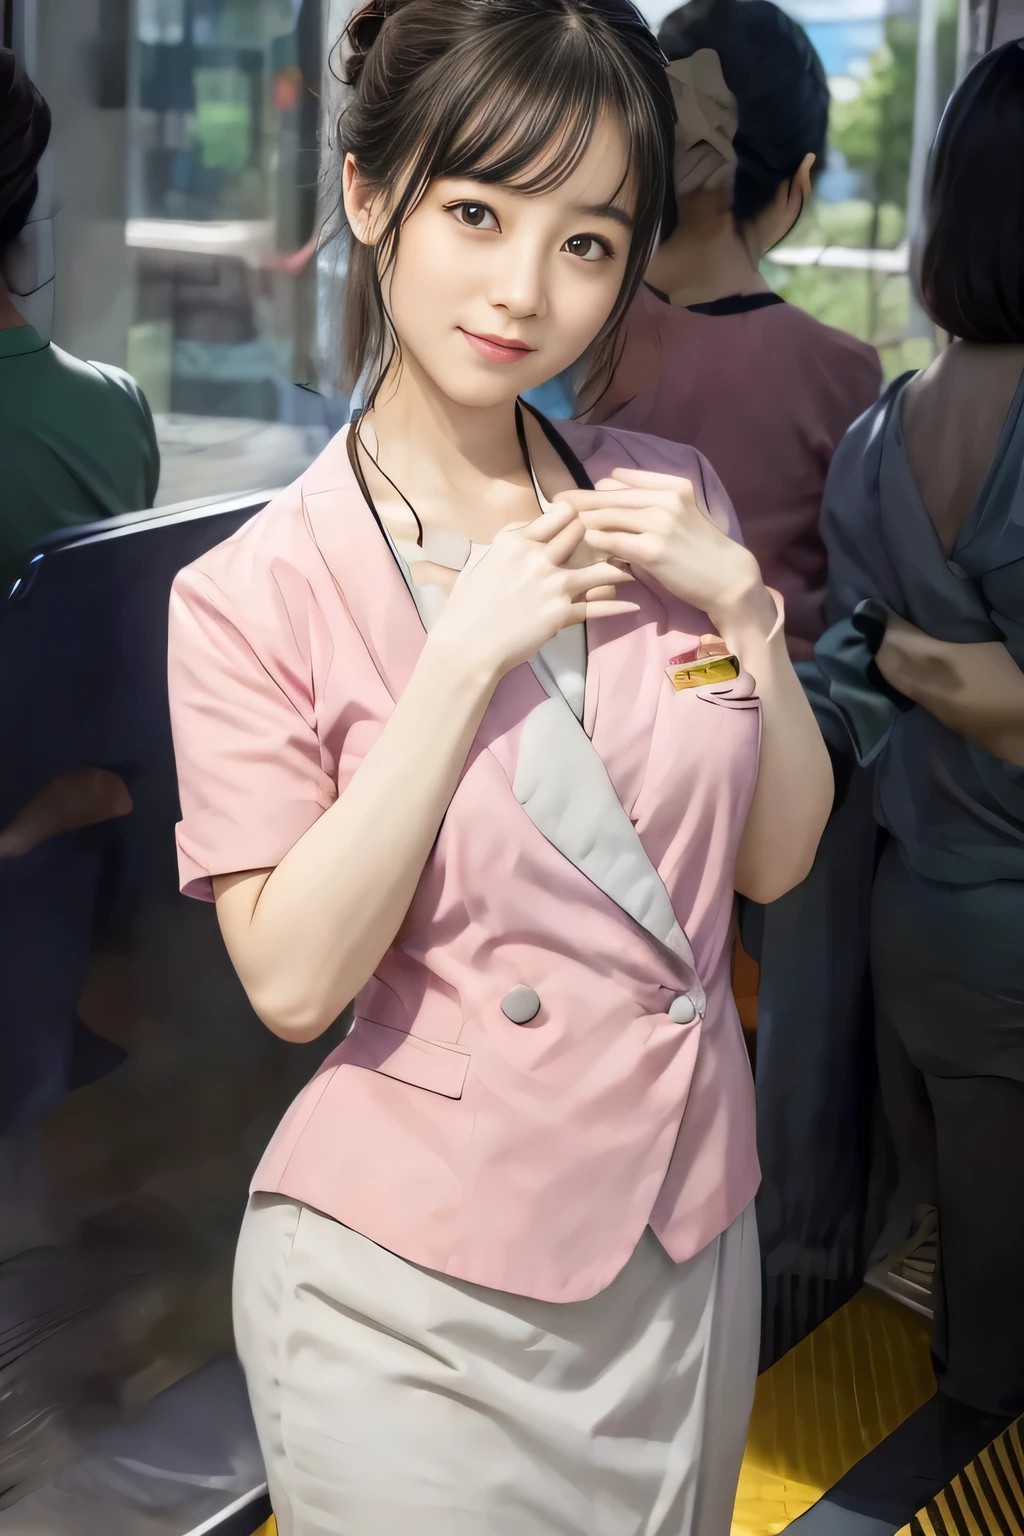 (Obra maestra:1.2, de la máxima calidad:1.2), 32K HDR, alta resolución, (alone、1 chica)、 (Altura: 160cm)、（En la azotea de un edificio durante el día.、Iluminación profesional）、Fondo de la azotea del edificio、（Estilo real con el uniforme rosa de la tripulación del tren Nankai）、（Nankai tren tripulación uniforme rosa manga corta sin cuello chaqueta rosa、Nankai Train Crew Uniform Blusa rosa de manga corta sin cuello、Nankai Train Crew Uniforme Falda pantalón hasta la rodilla rosa gris）、Cabello castaño oscuro、（cabello recogido、cabello recogido、Peinado rizado de noche）、Cabello castaño oscuro、tiro largo、pechos grandes、piernas delgadas、（（grandes manos：2.0）），（（Proporciones corporales armoniosas：1.5）），（（Extremidades normales：2.0）），（（Dedo normal：2.0）），（（ojos delicados：2.0）），（（Normal eyes：2.0））)、sonrisa、（Nankai Train Crew Uniforme Falda pantalón hasta la rodilla rosa grisを見せた美しい歩く姿）、Coloque sus manos alrededor de su estómago、Tarjeta de identificación de empleado con cordón